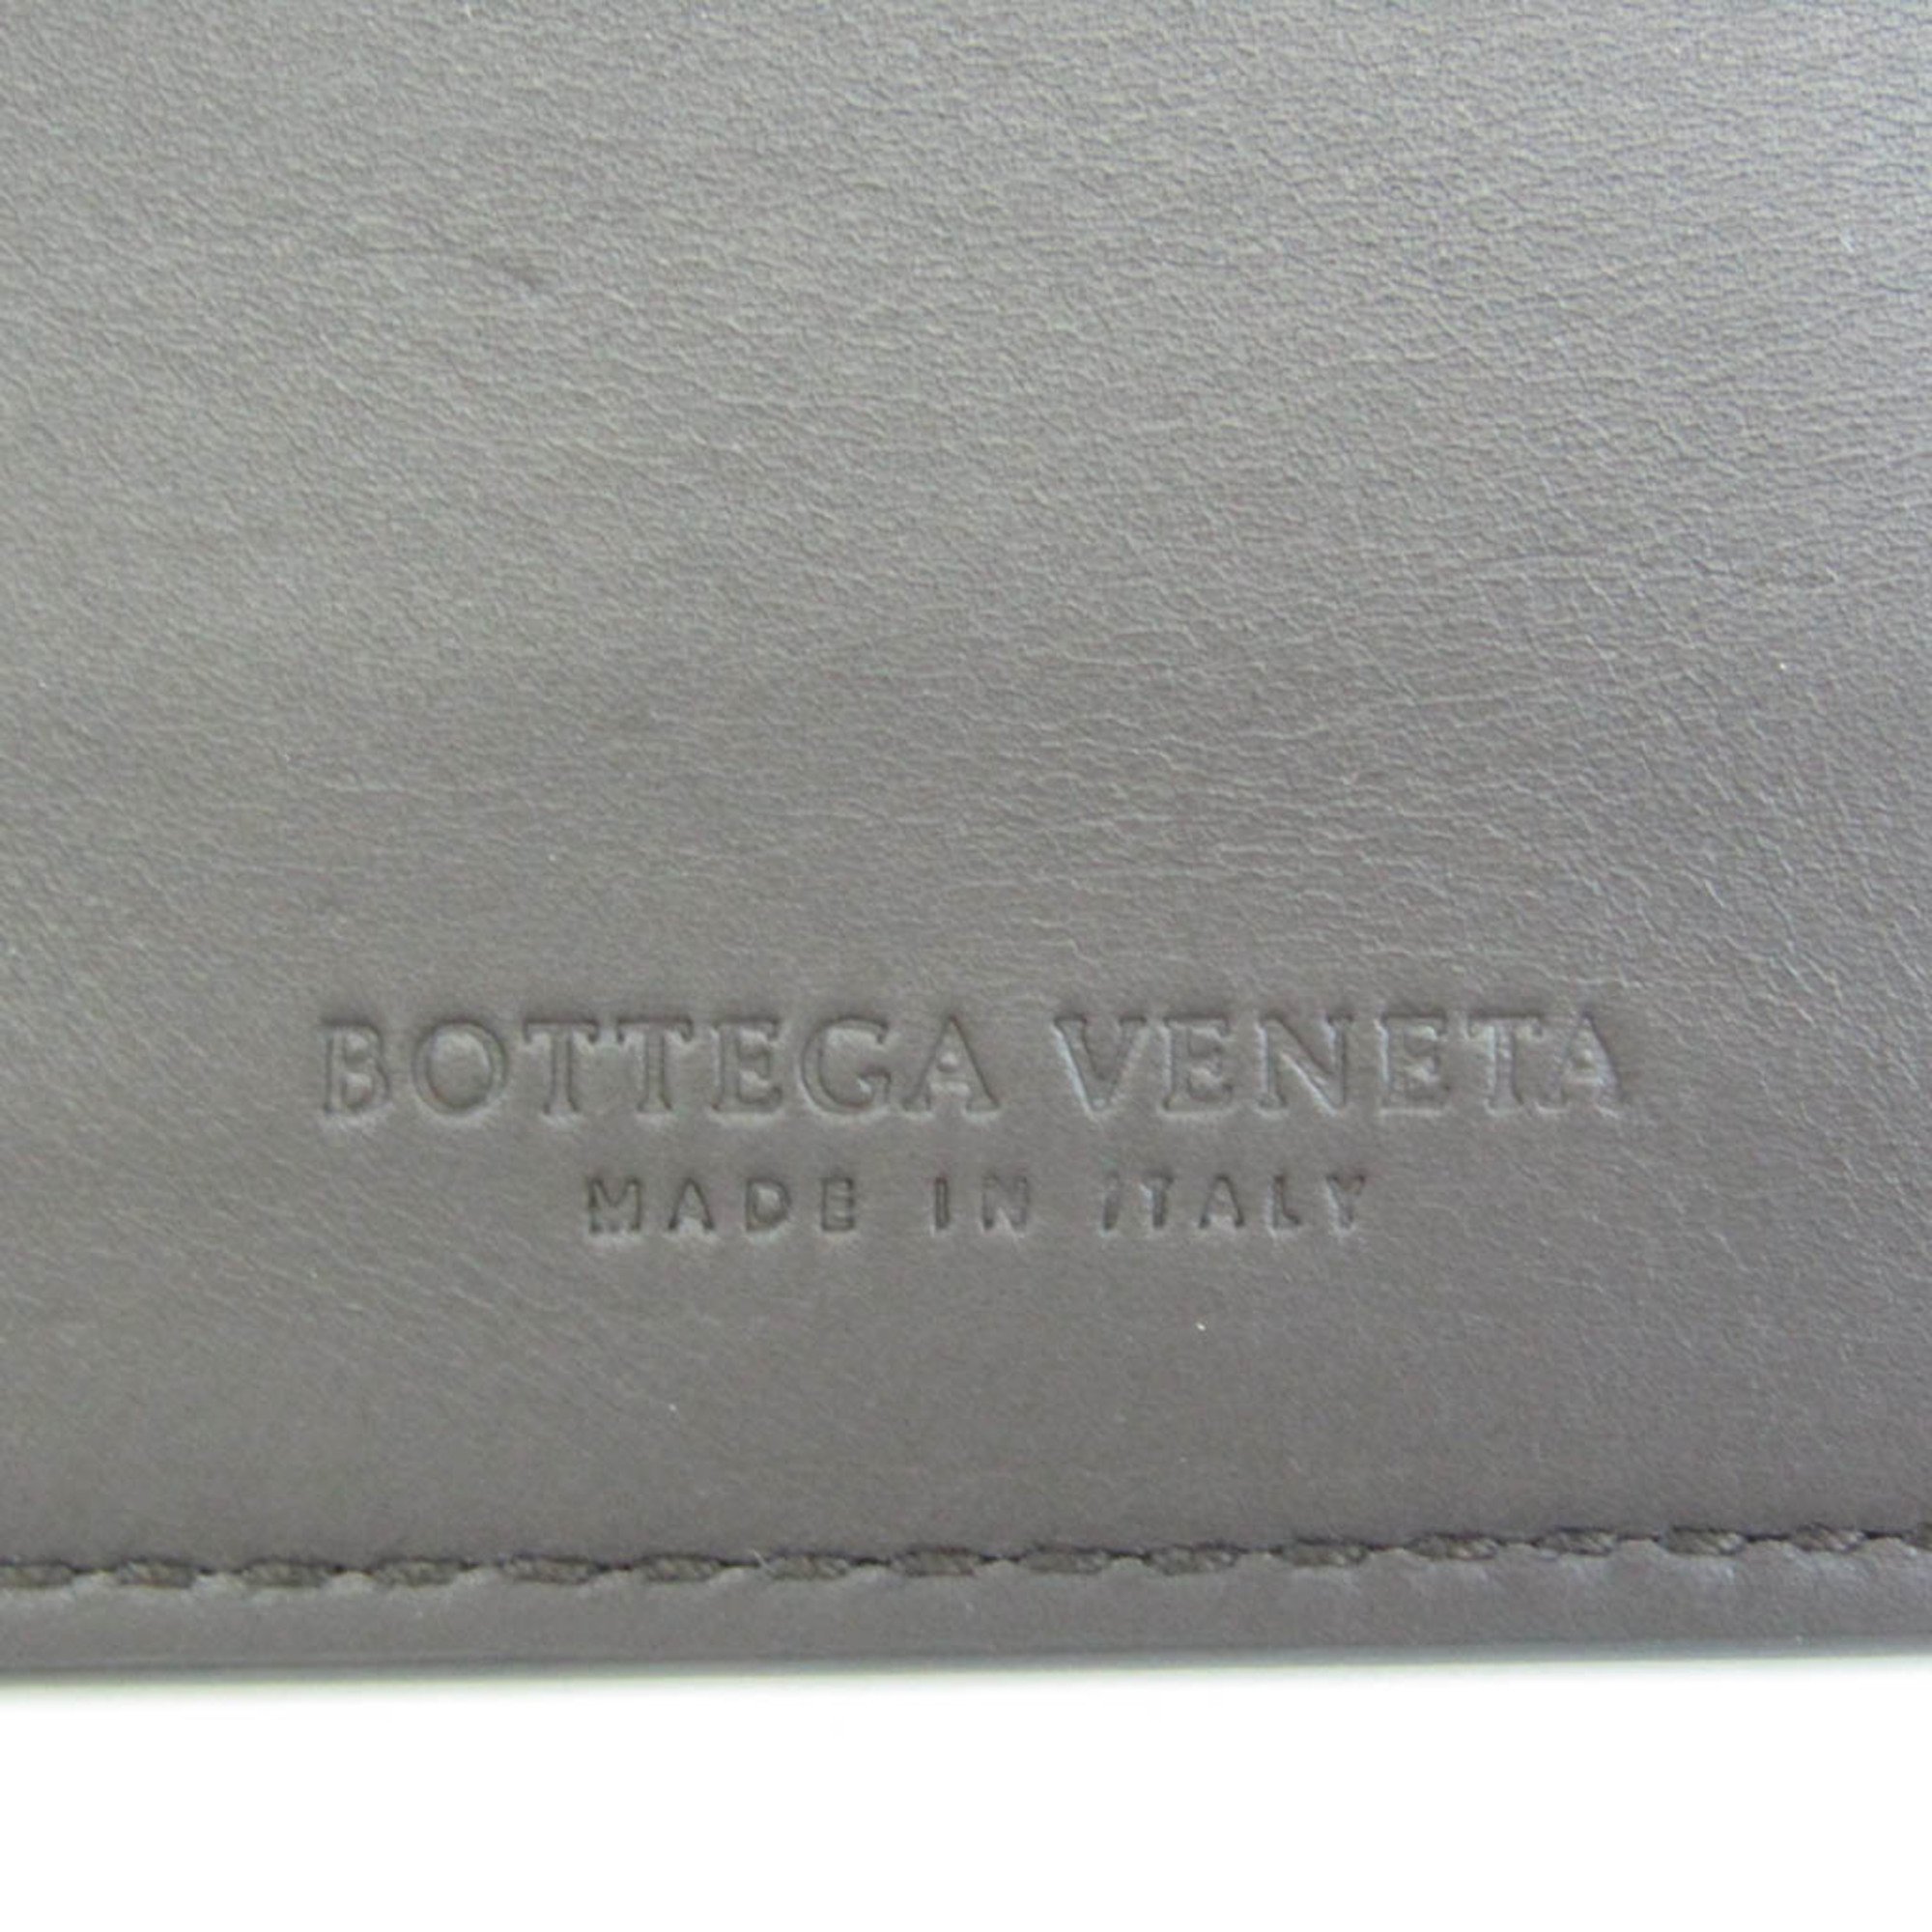 ボッテガ・ヴェネタ(Bottega Veneta) コントラスト パンチング 579246 レザー カードケース ダークブラウン